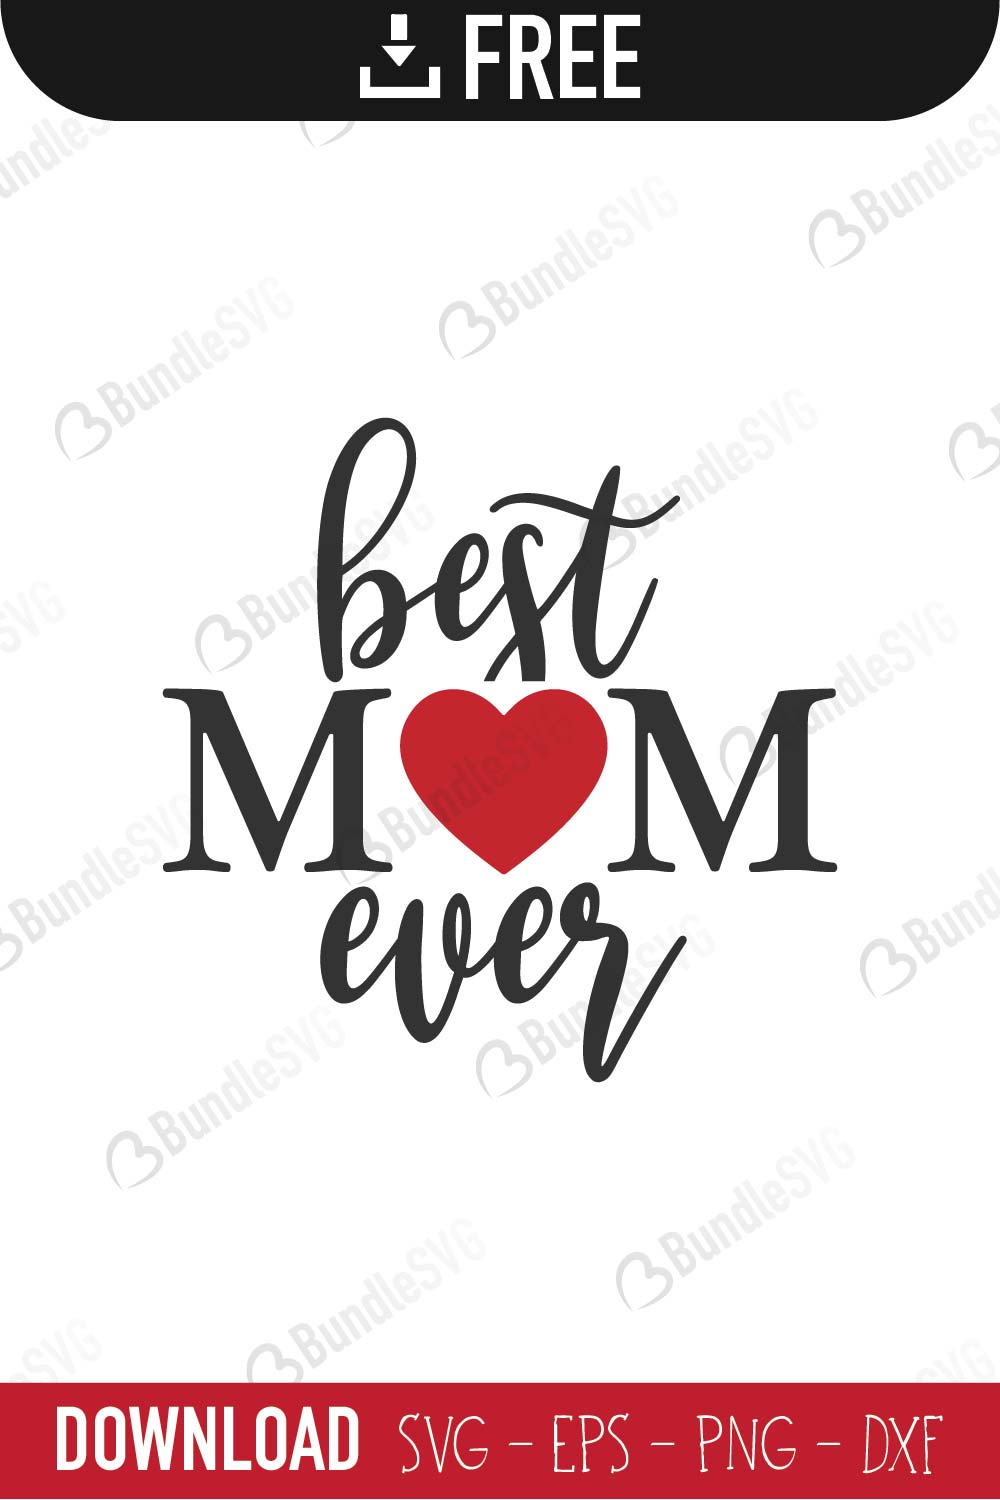 Download Best Mom Ever Svg Cut Files Free Download Bundlesvg